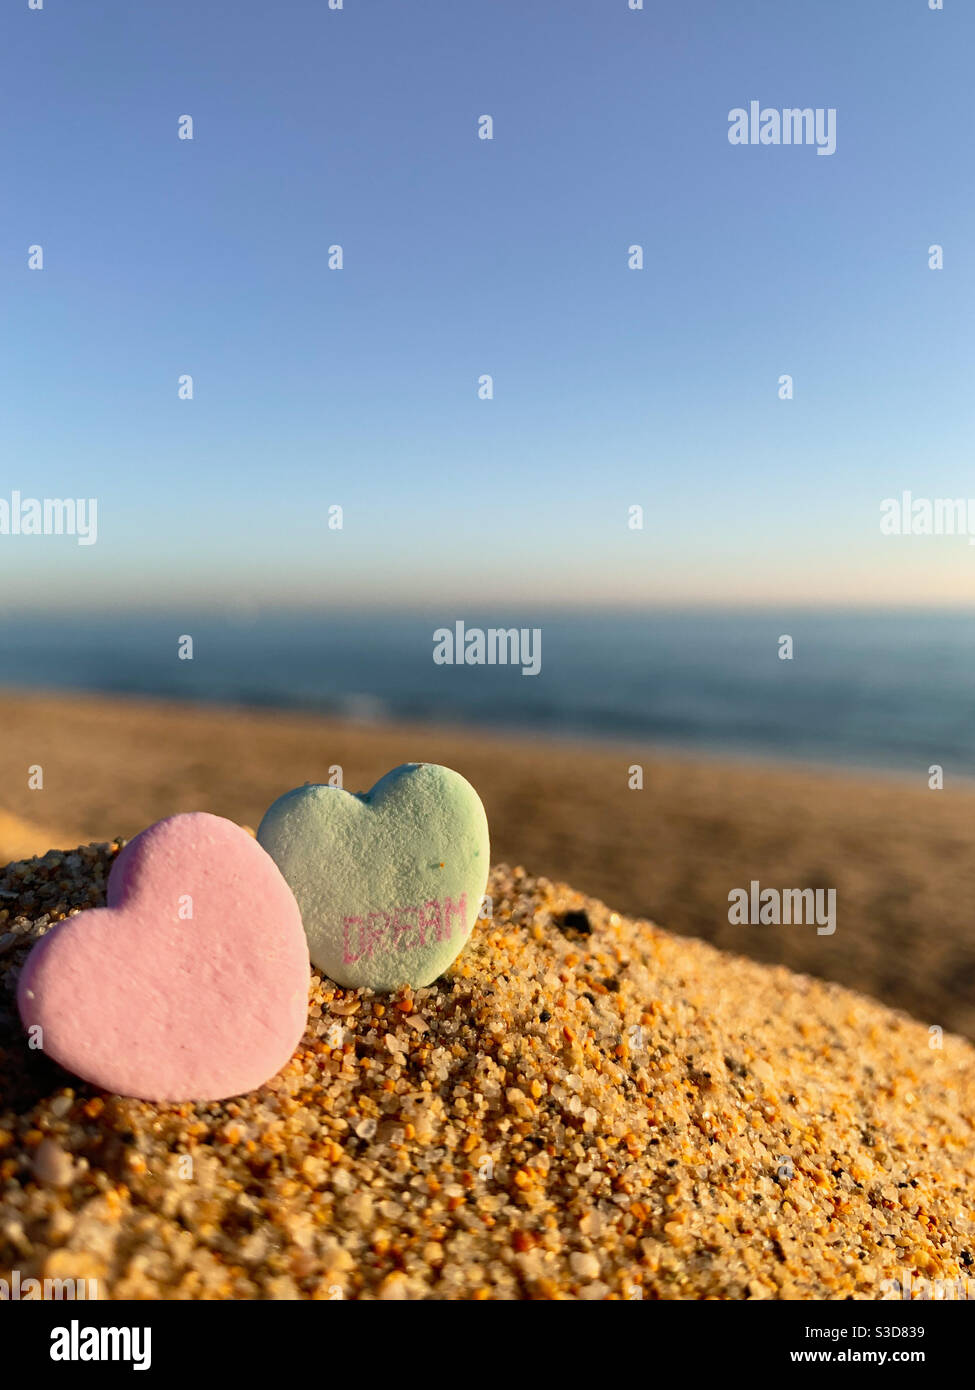 Deux bonbons de Saint-Valentin en forme de coeur dans le sable sur la plage avec l'océan flou à l'horizon. L'une des friandises de coeur a le mot rêve sur elle. Banque D'Images